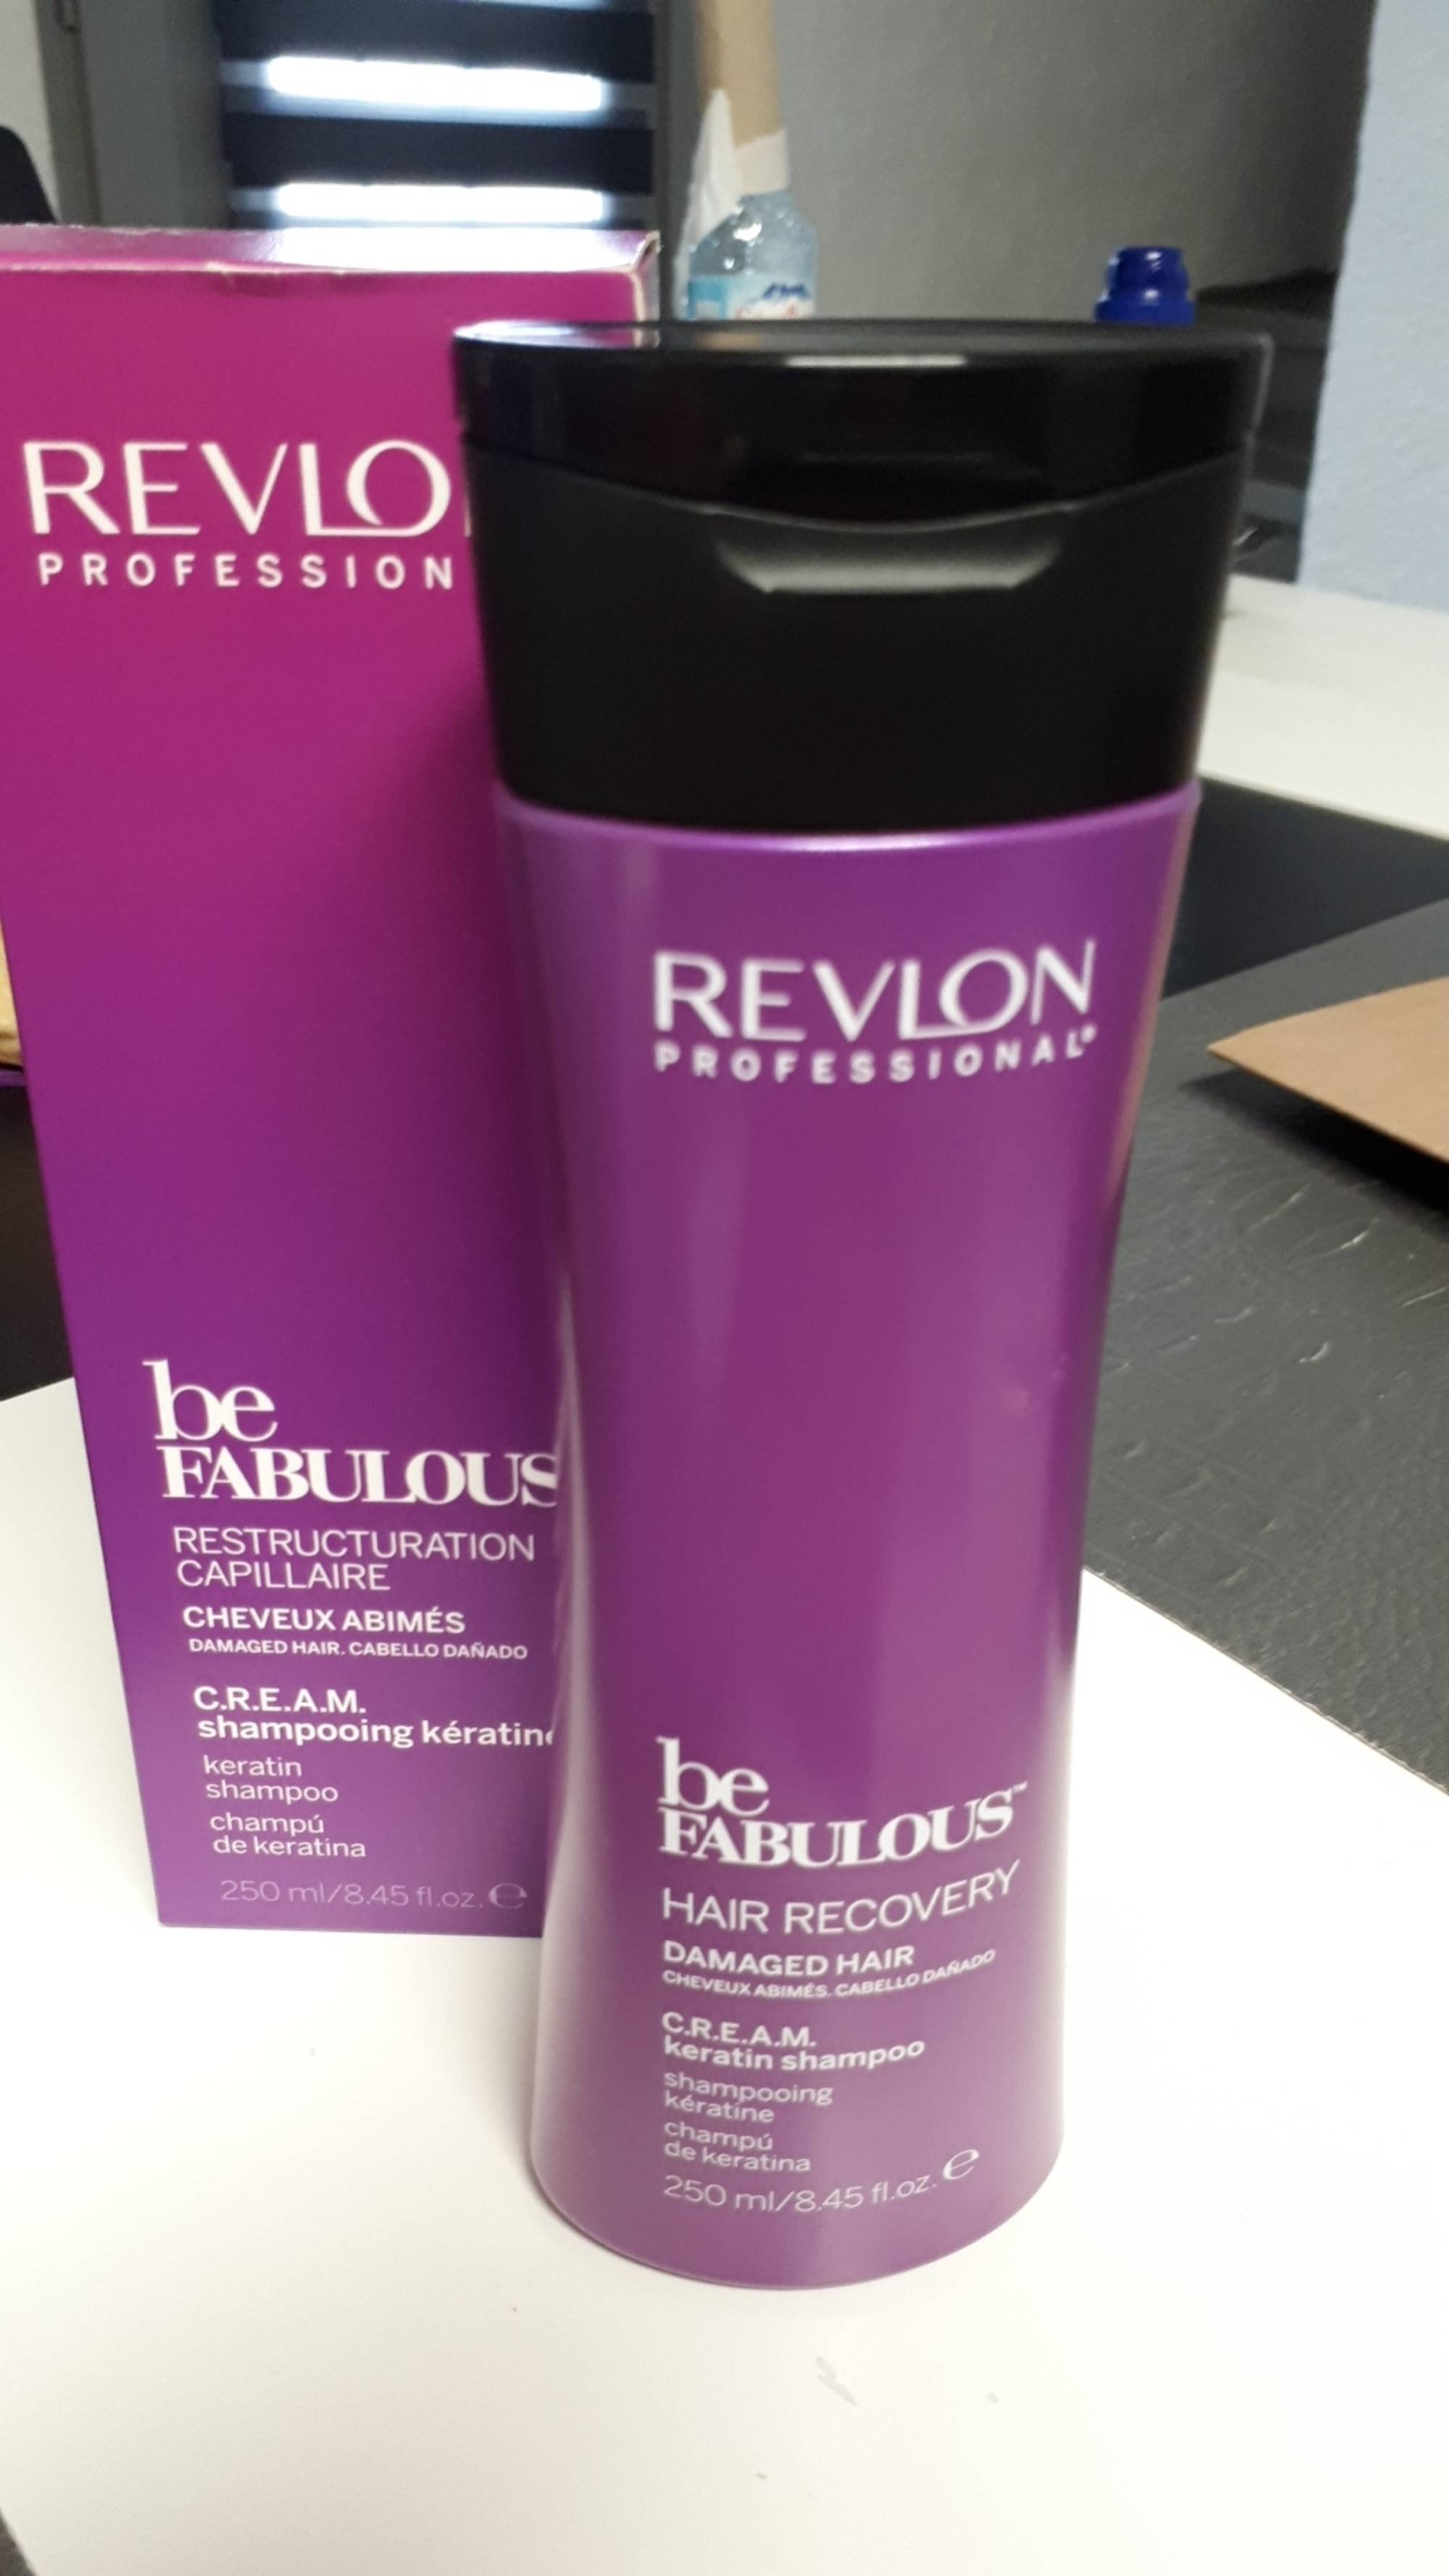 REVLON - Be fabulous - C.R.E.A.M. Shampooing kératine